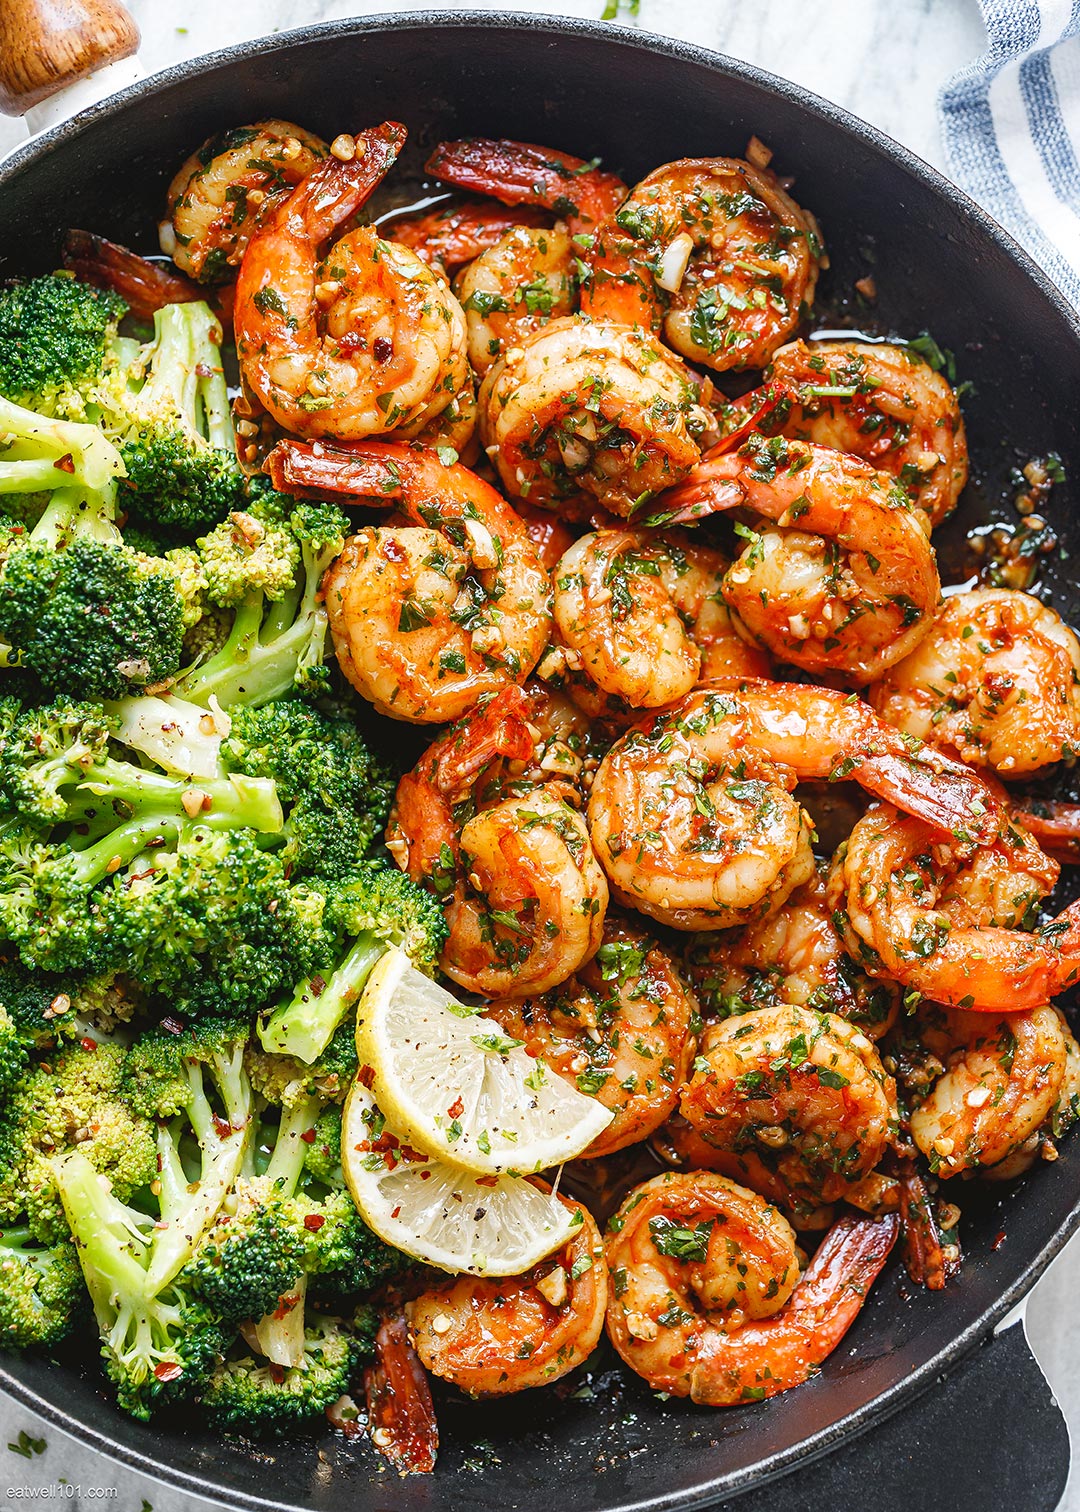 Garlic Butter Shrimp with Broccoli Skillet best shrimp recipe